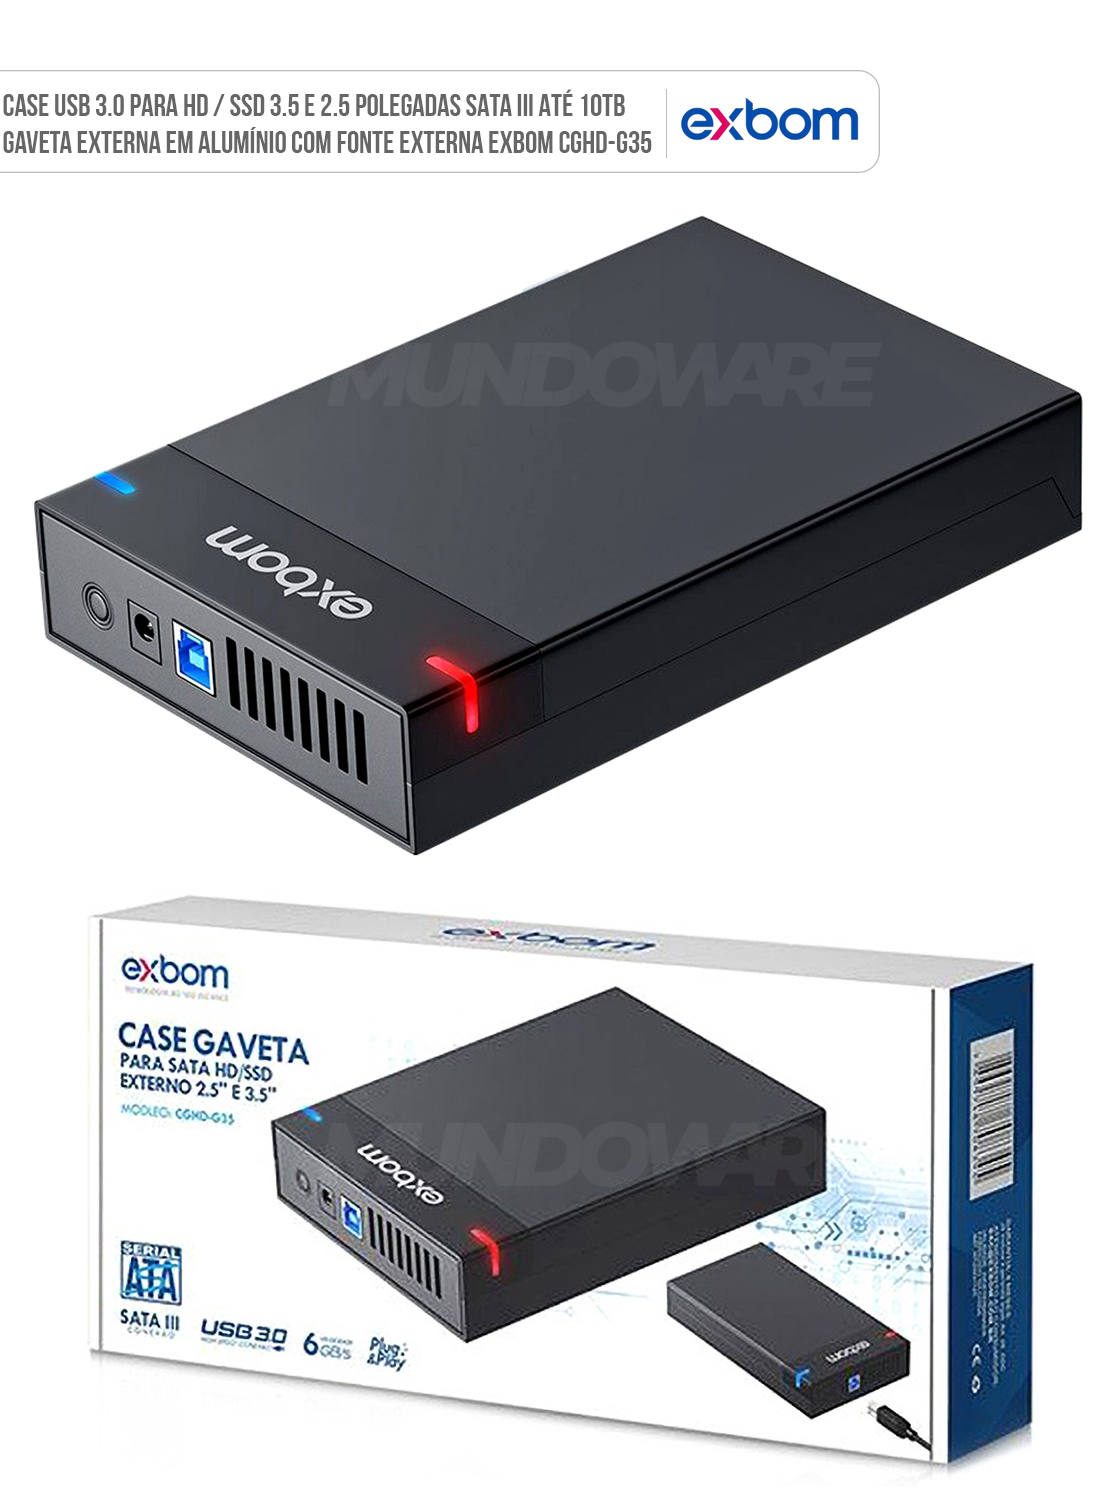 Case USB 3.0 para HD 3.5 e 2.5 polegadas SATA III at 10TB Gaveta Externa em Alumnio com Fonte Externa Exbom CGHD-G35